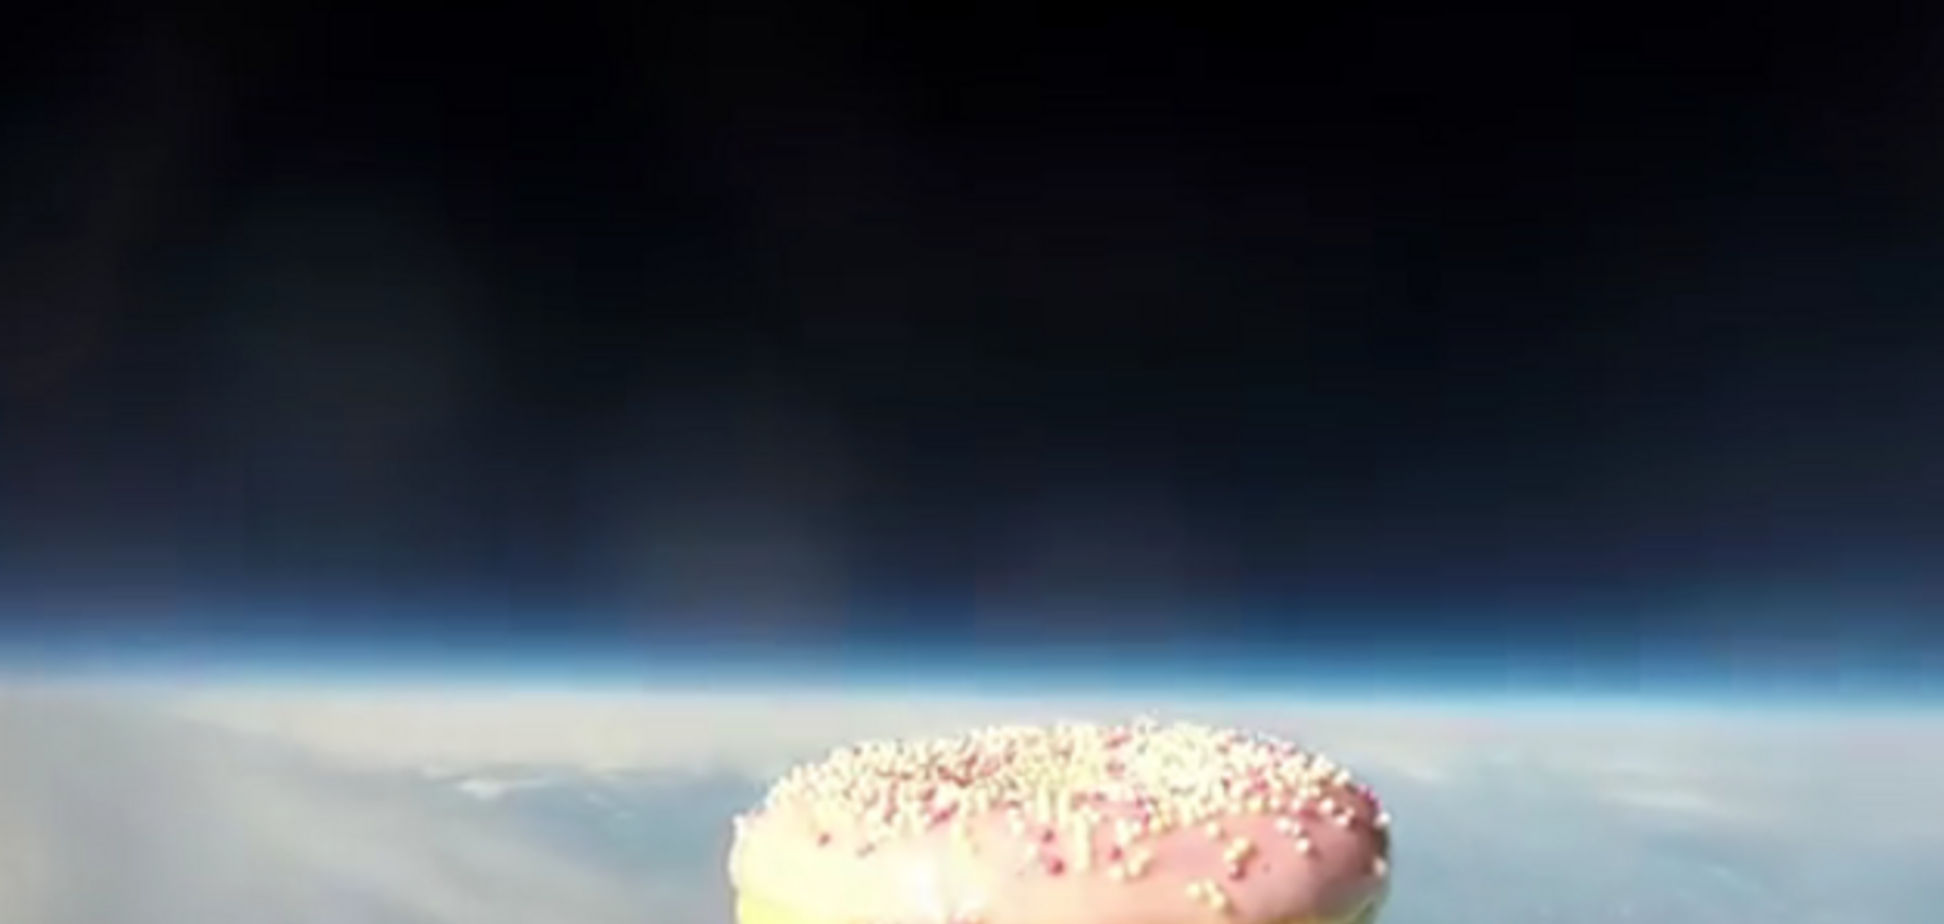 В космос отправили первый в мире пончик-астронавт: опубликовано видео